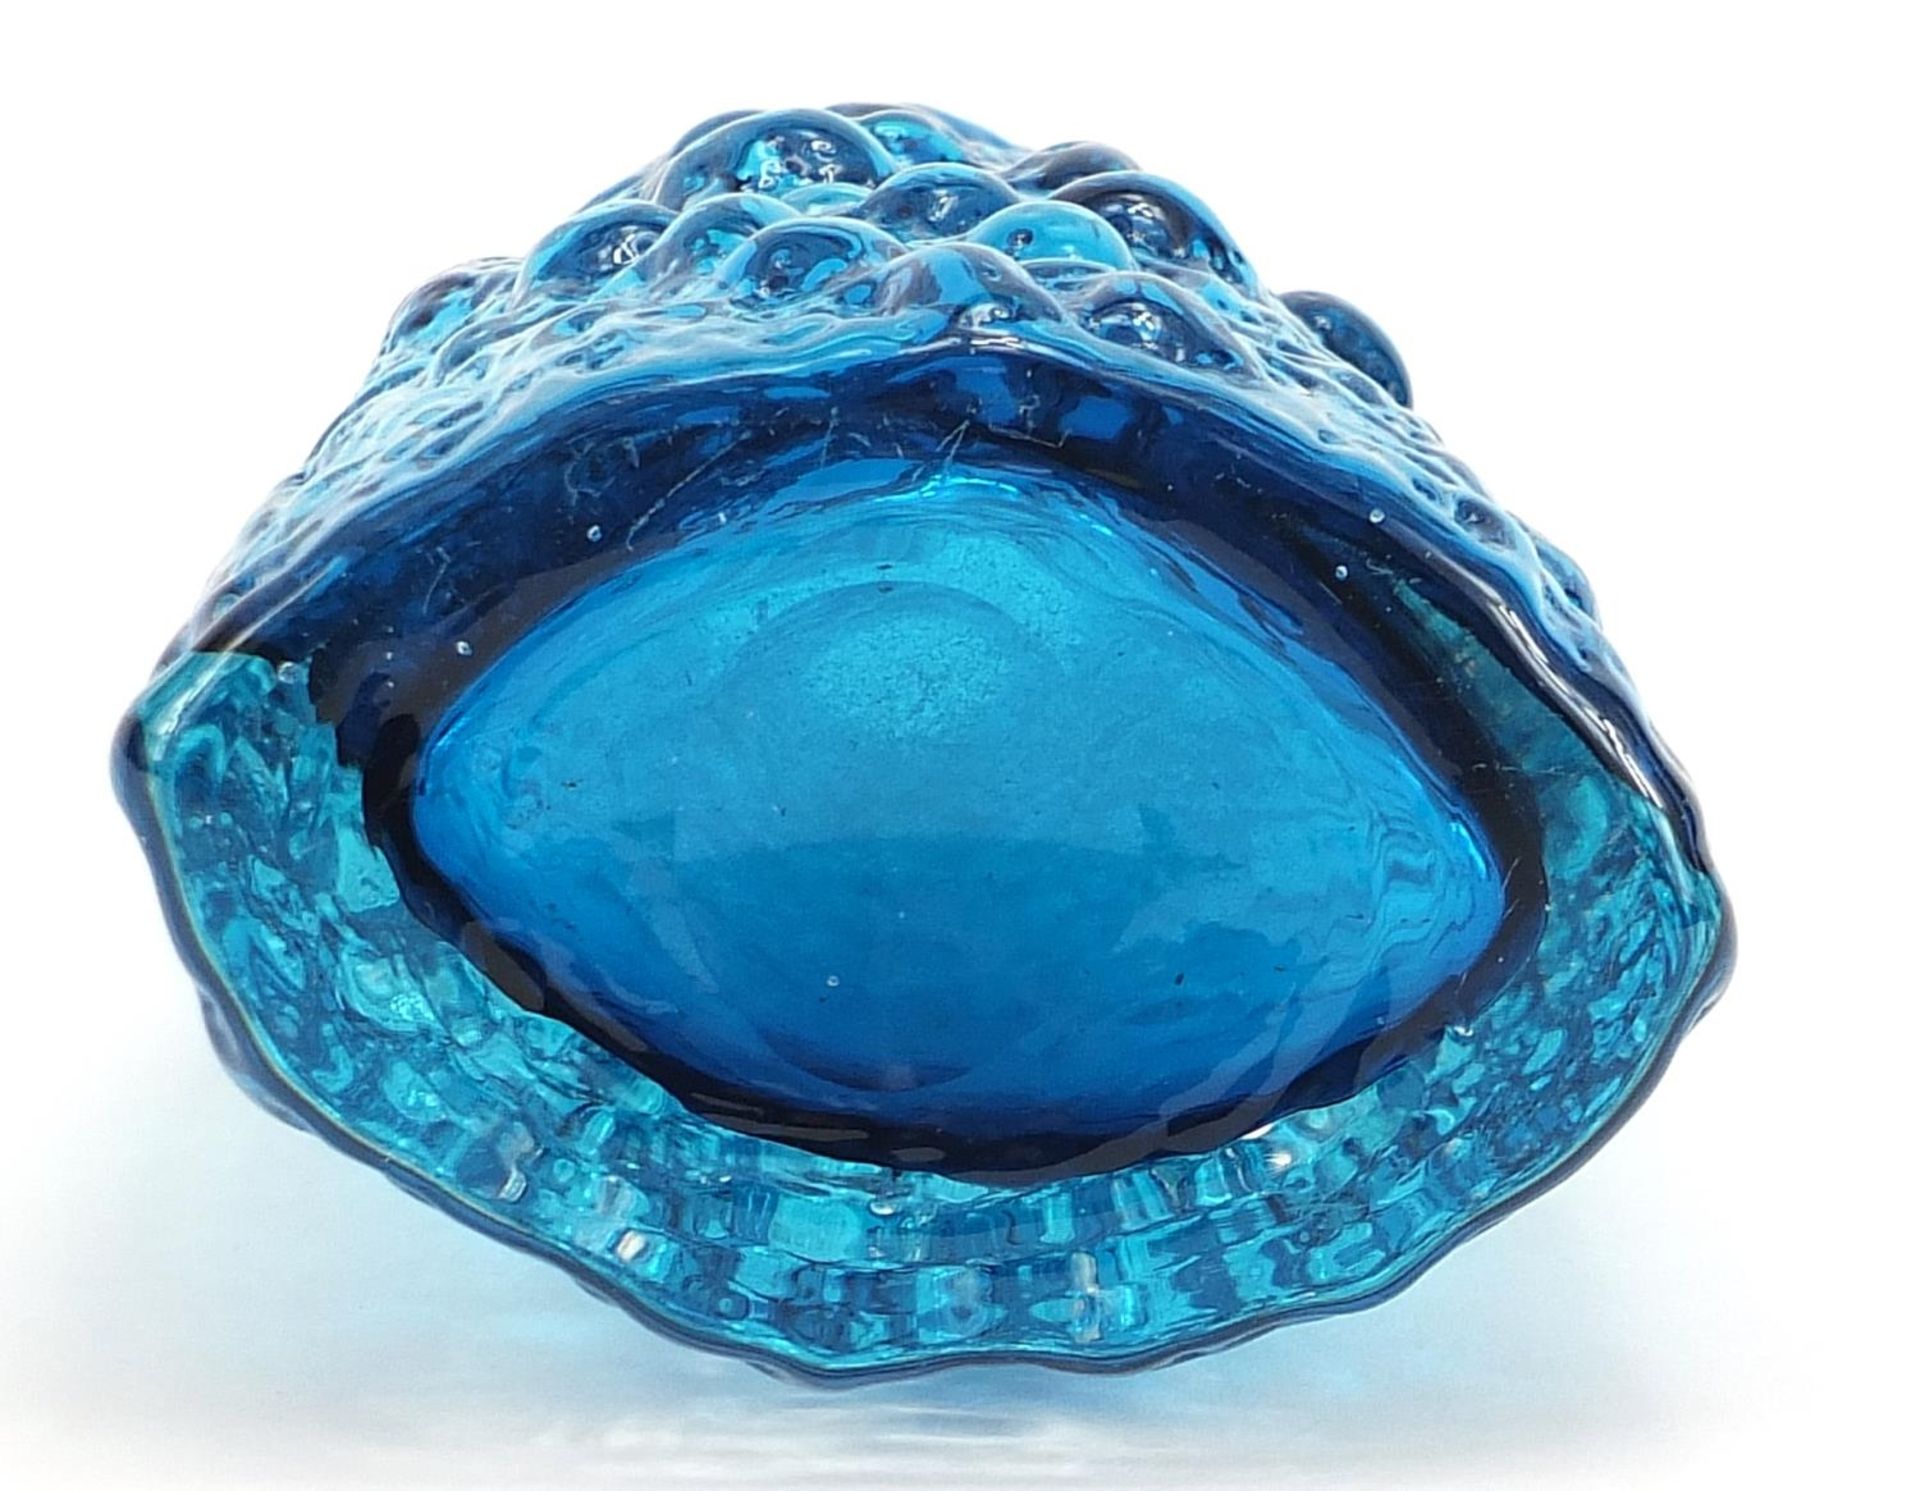 Geoffrey Baxter for Whitefriars, volcano glass vase in kingfisher blue, 18cm high - Bild 3 aus 3